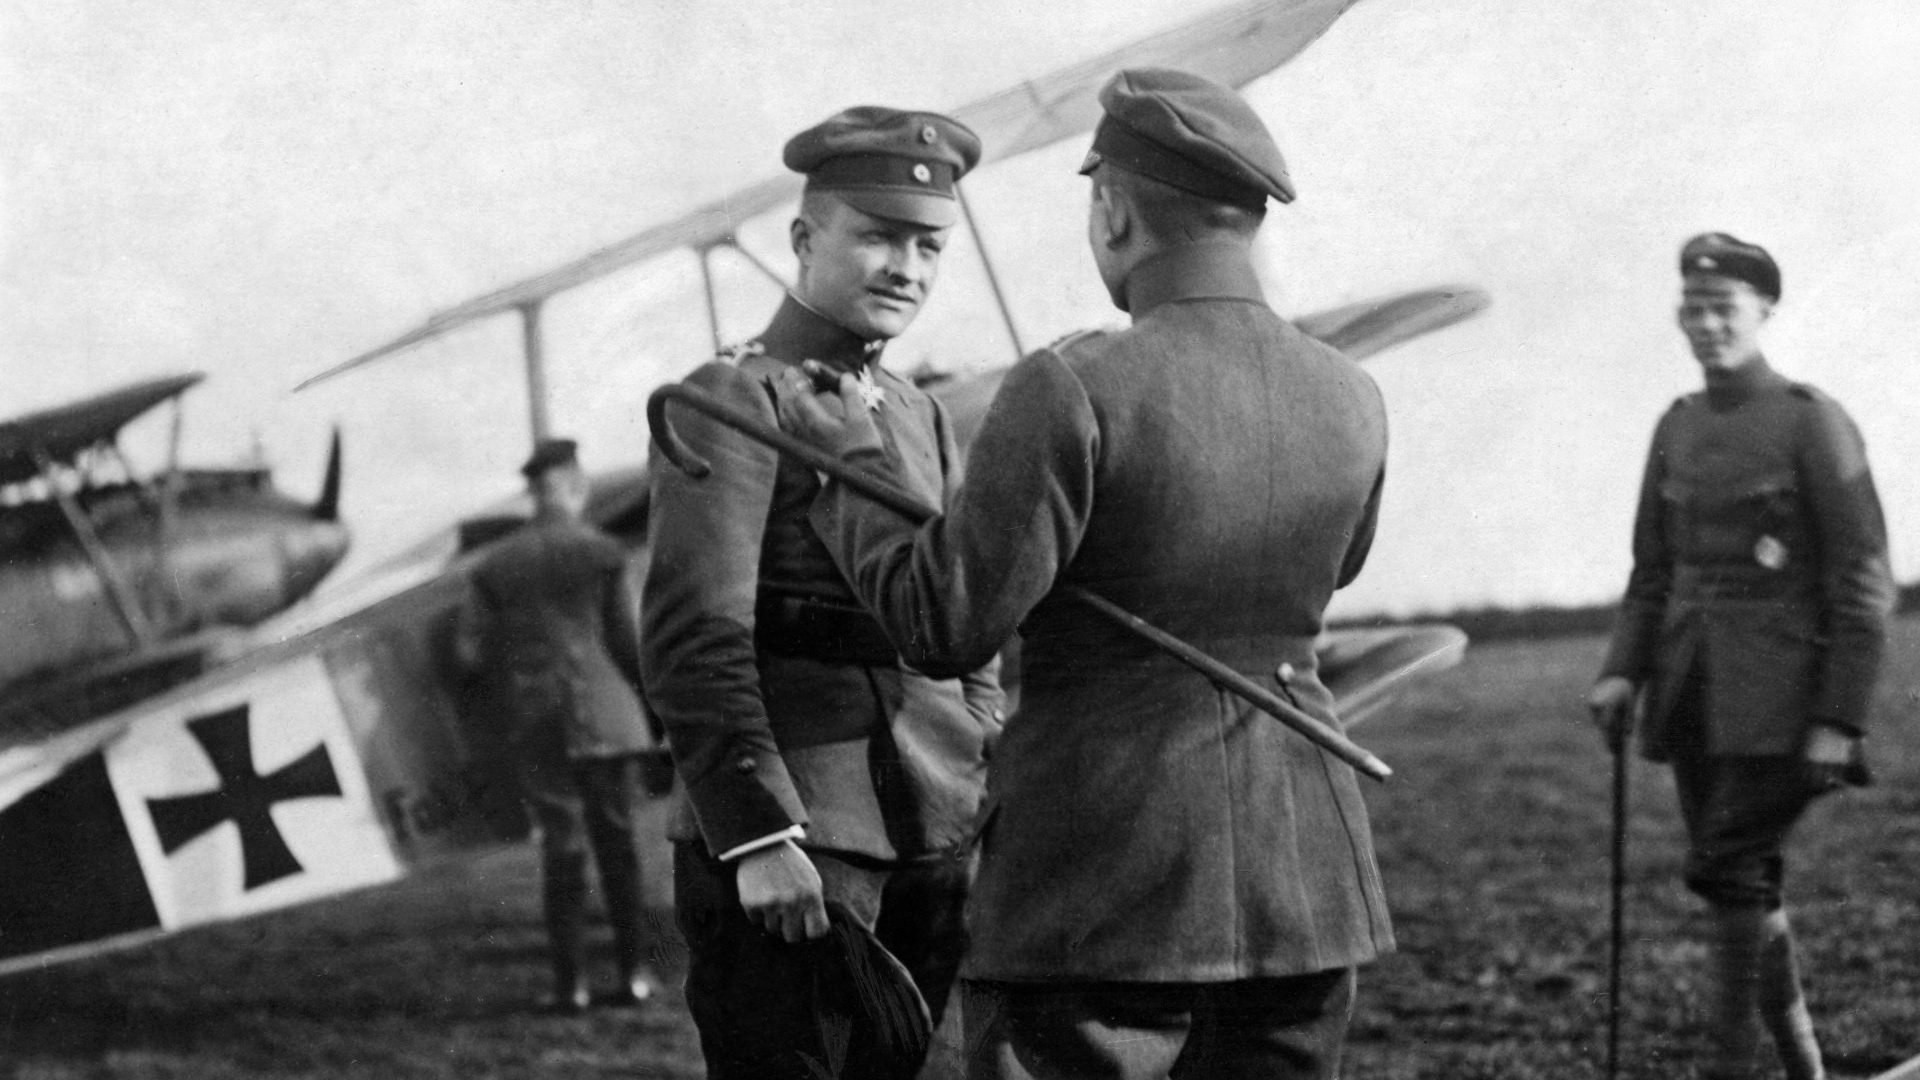 Manfred, baron von Richthofen  German World War I fighter ace